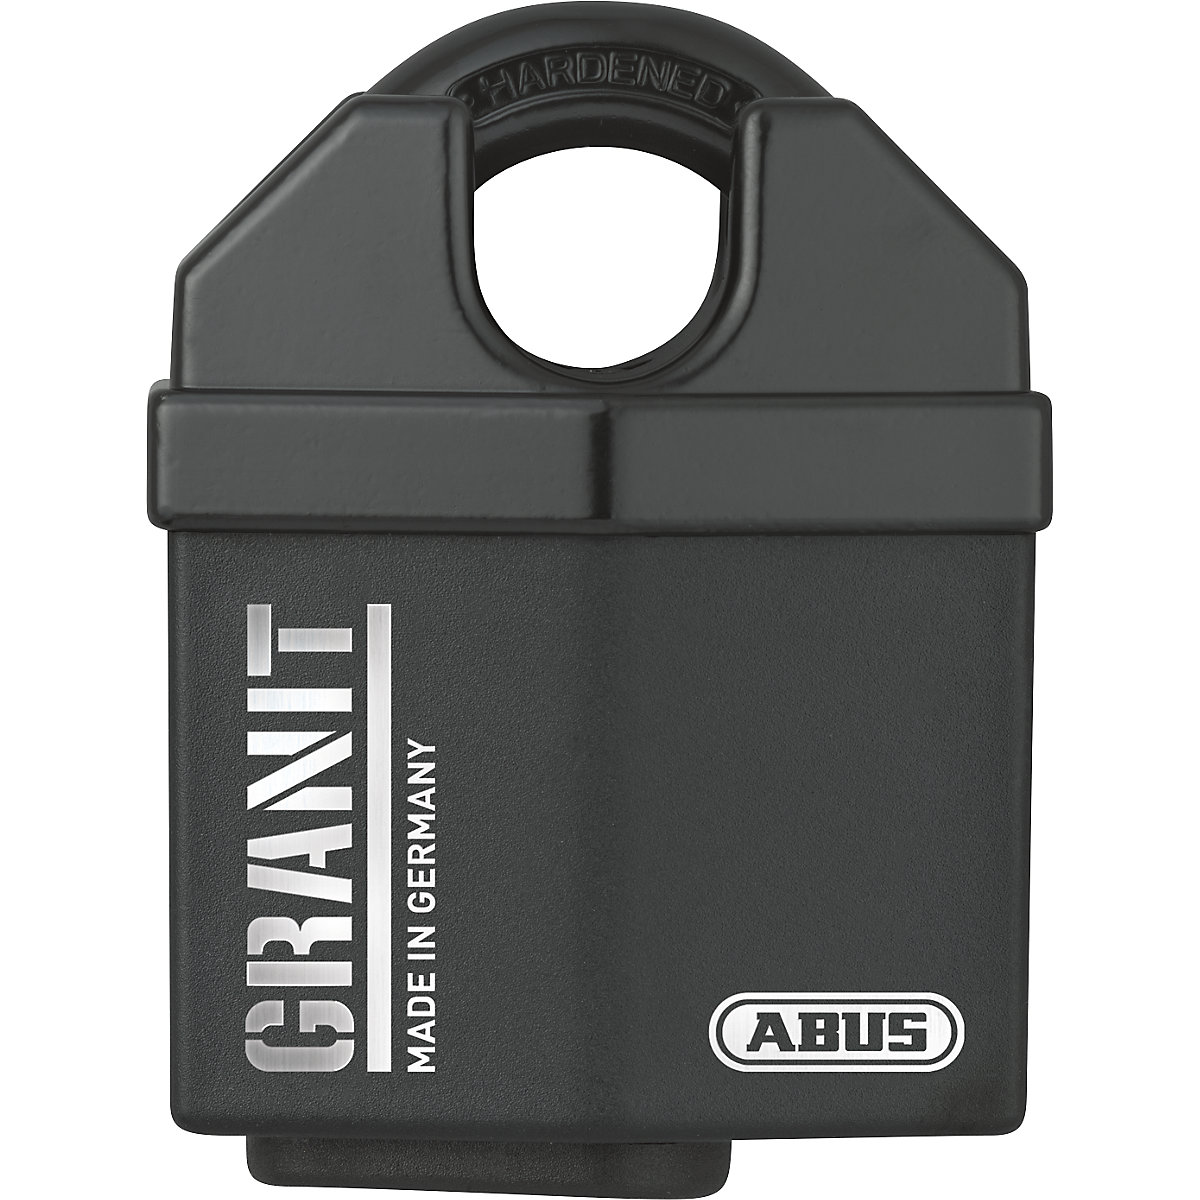 GRANIT™ padlock, steel – ABUS